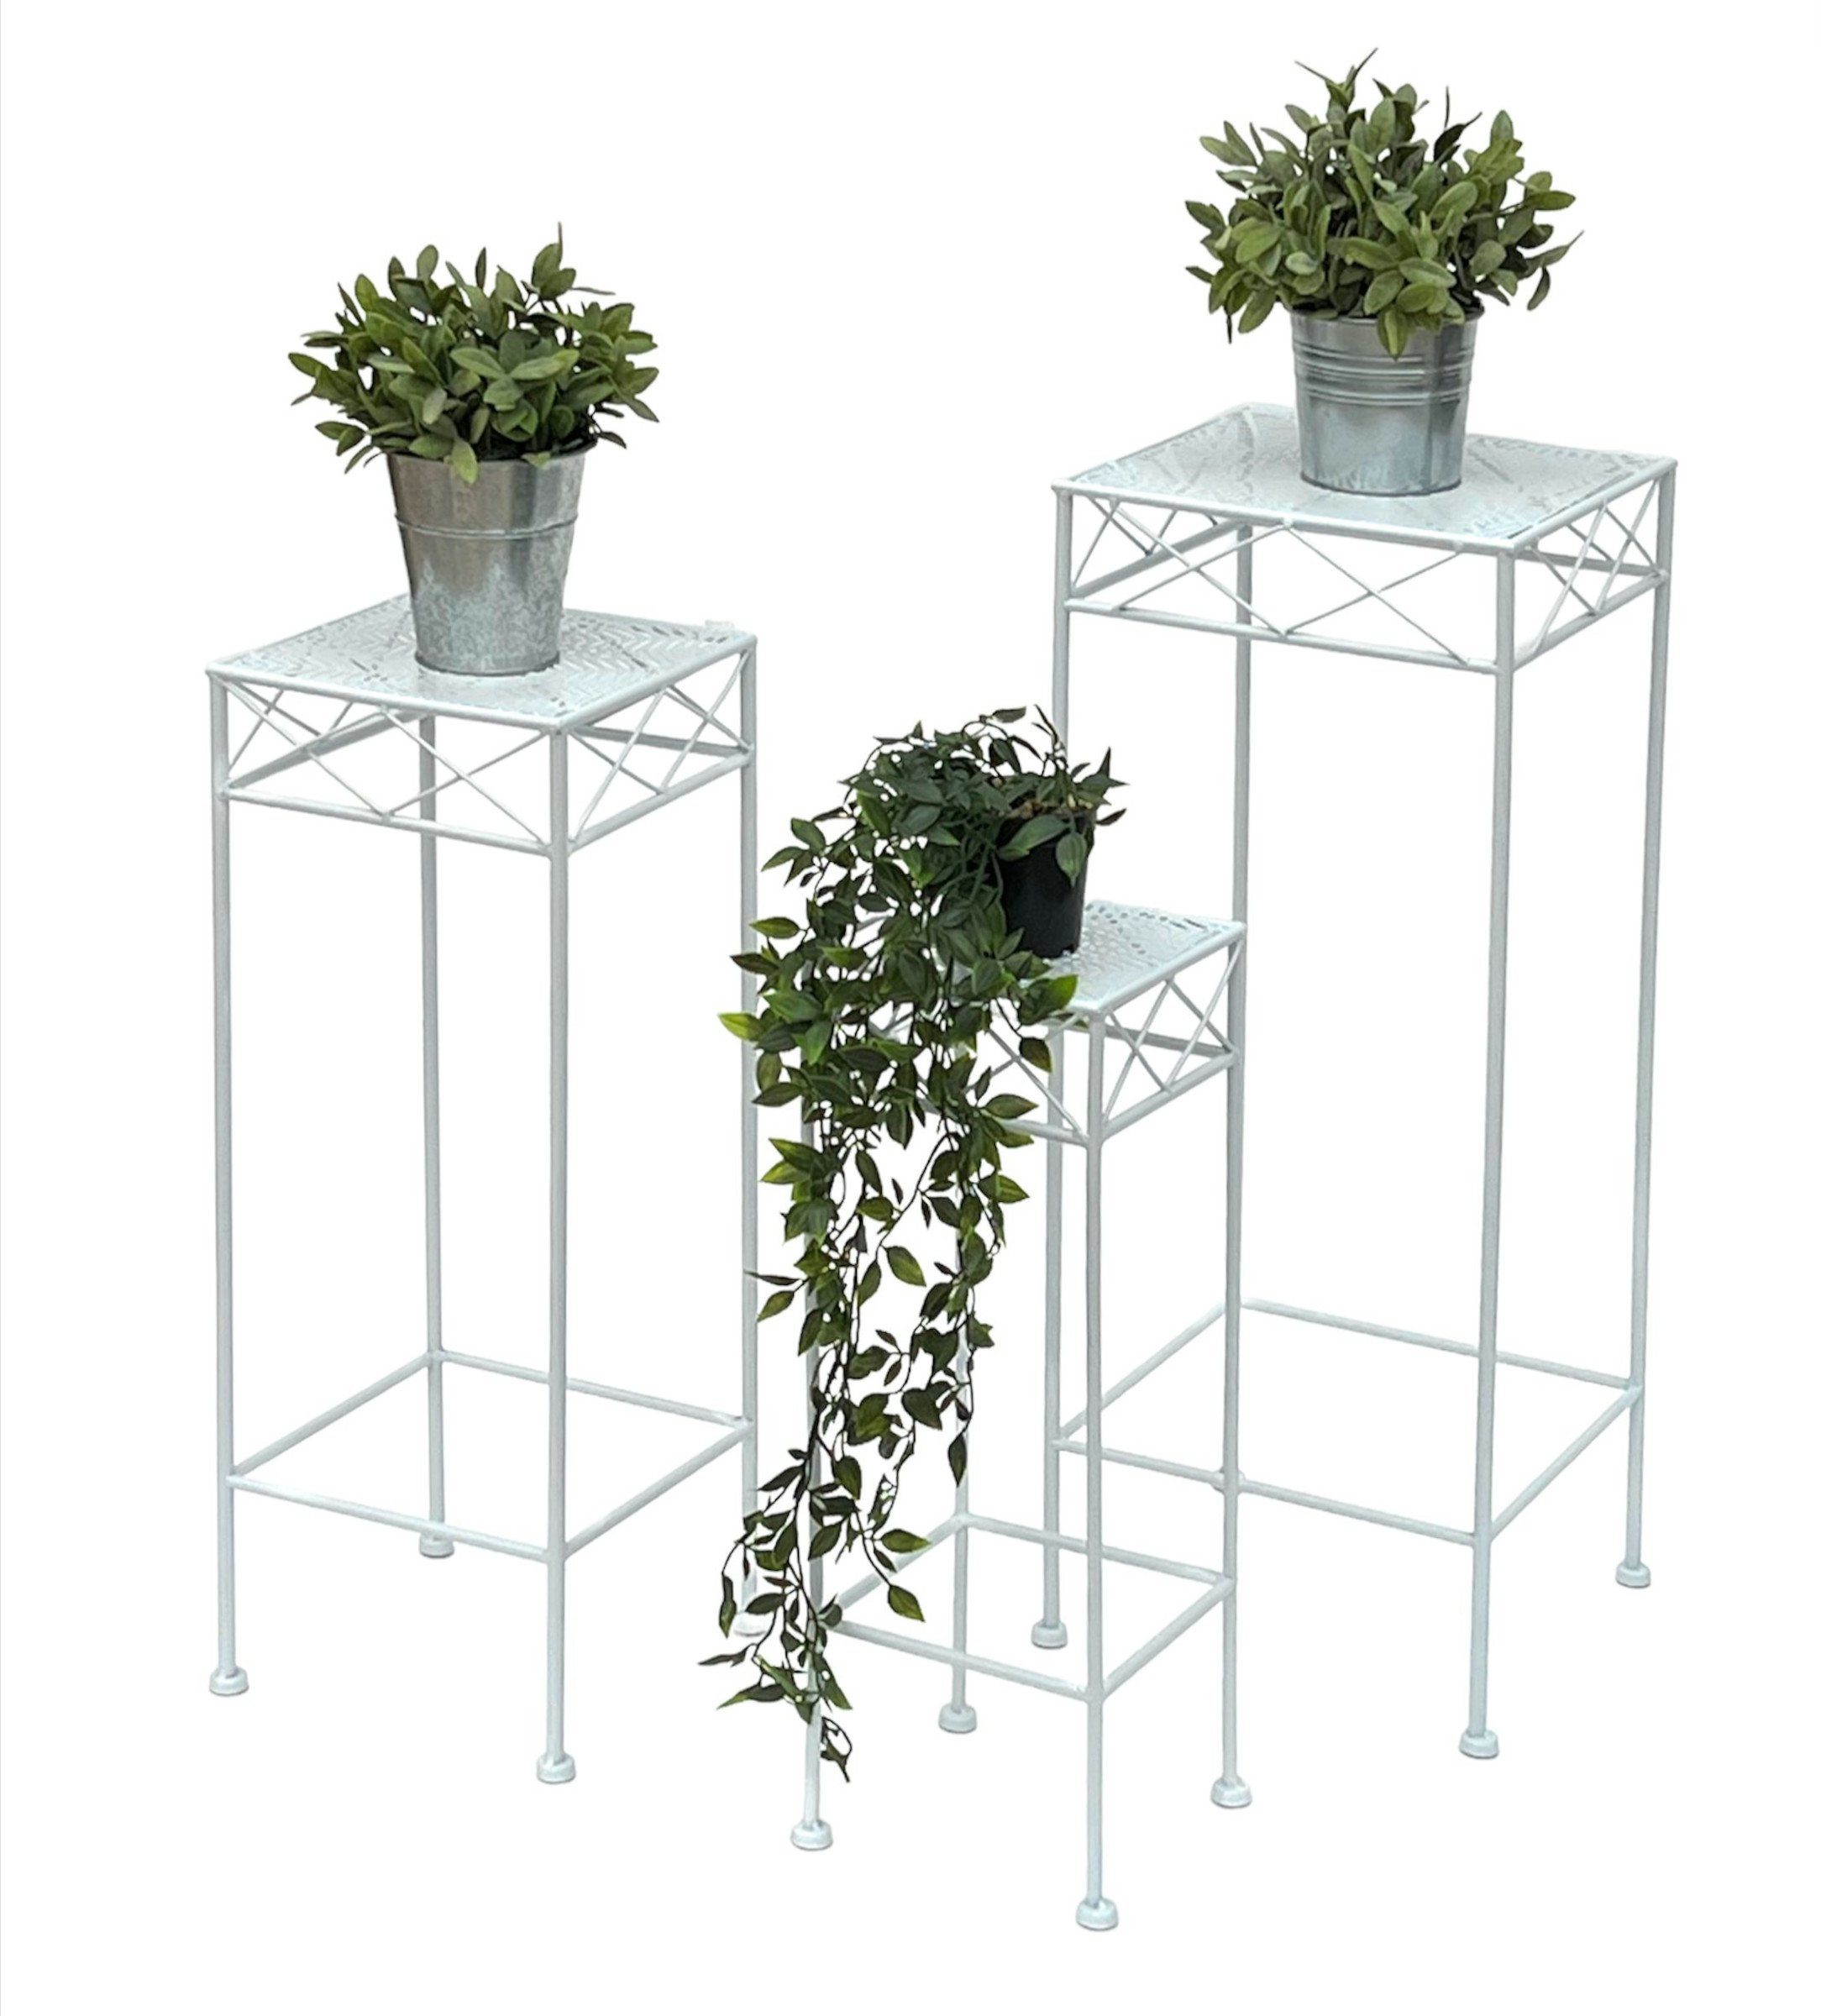 Metall Blumenhocker Beistelltisch Eckig 3er Set Weiß Blumenständer DanDiBo Blumenständer